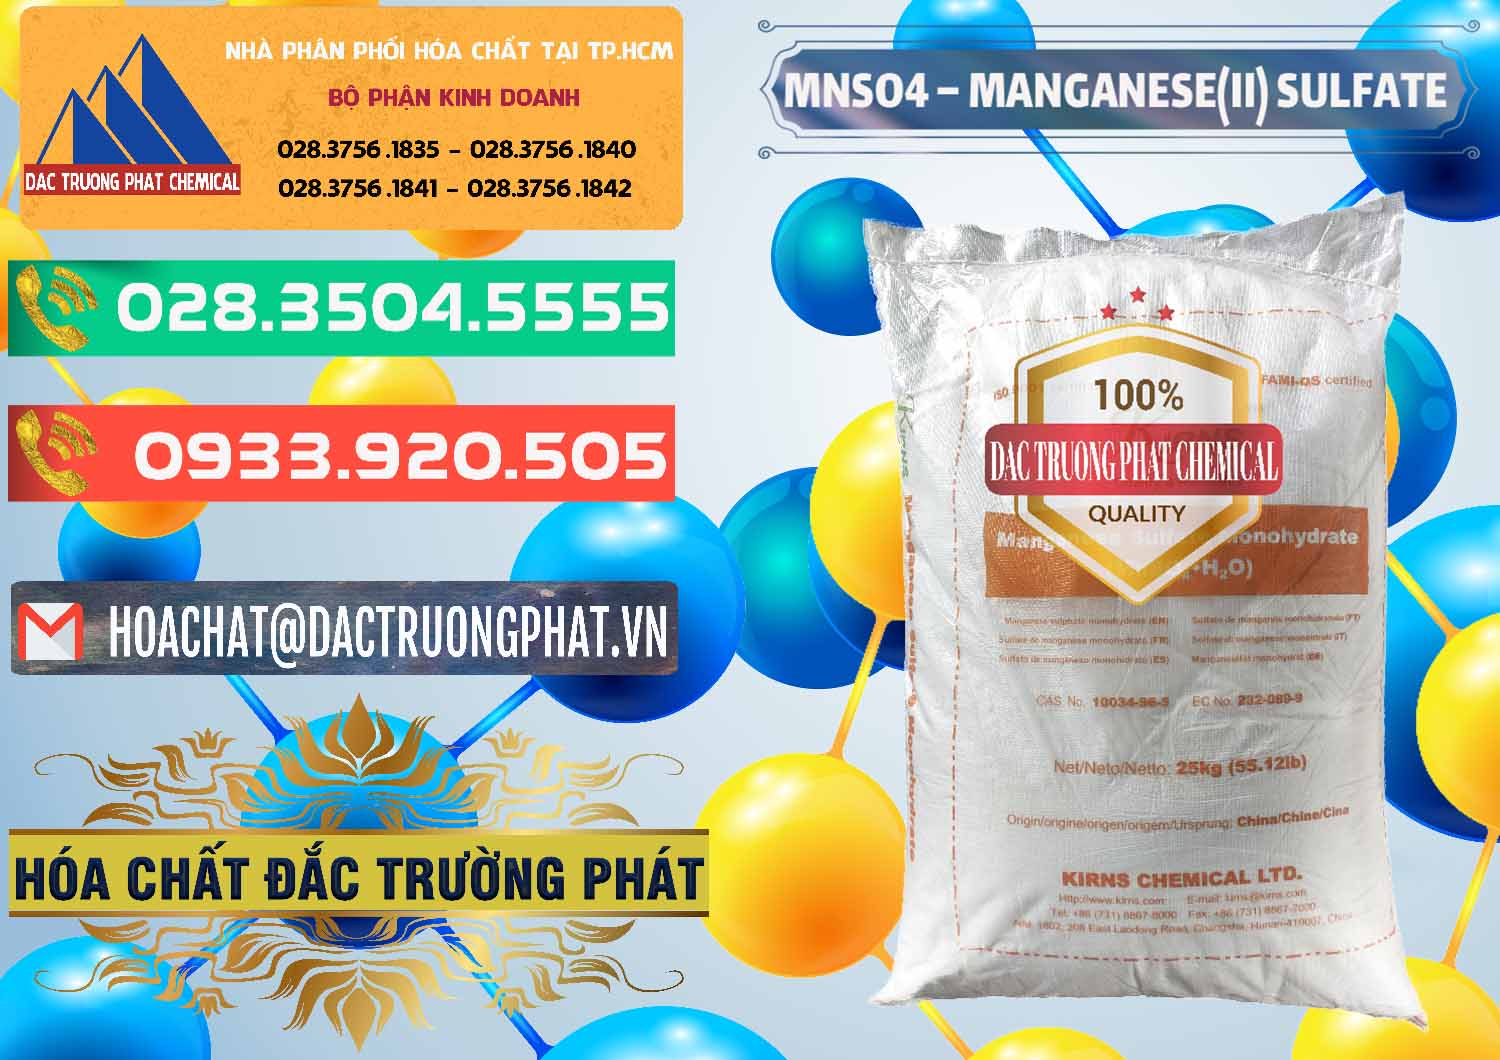 Cty kinh doanh và bán MNSO4 – Manganese (II) Sulfate Kirns Trung Quốc China - 0095 - Nơi nhập khẩu & cung cấp hóa chất tại TP.HCM - congtyhoachat.com.vn